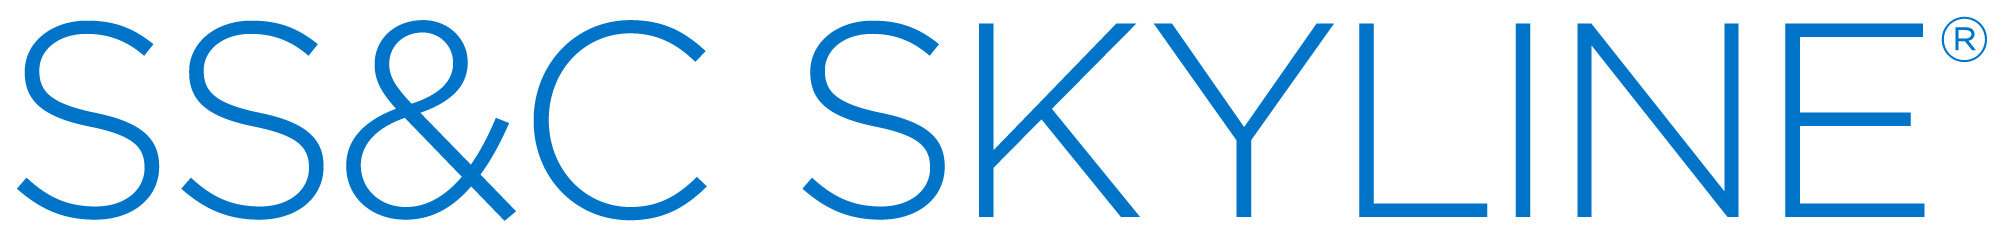 NEW Skyline-logo-blue-2000w.jpg